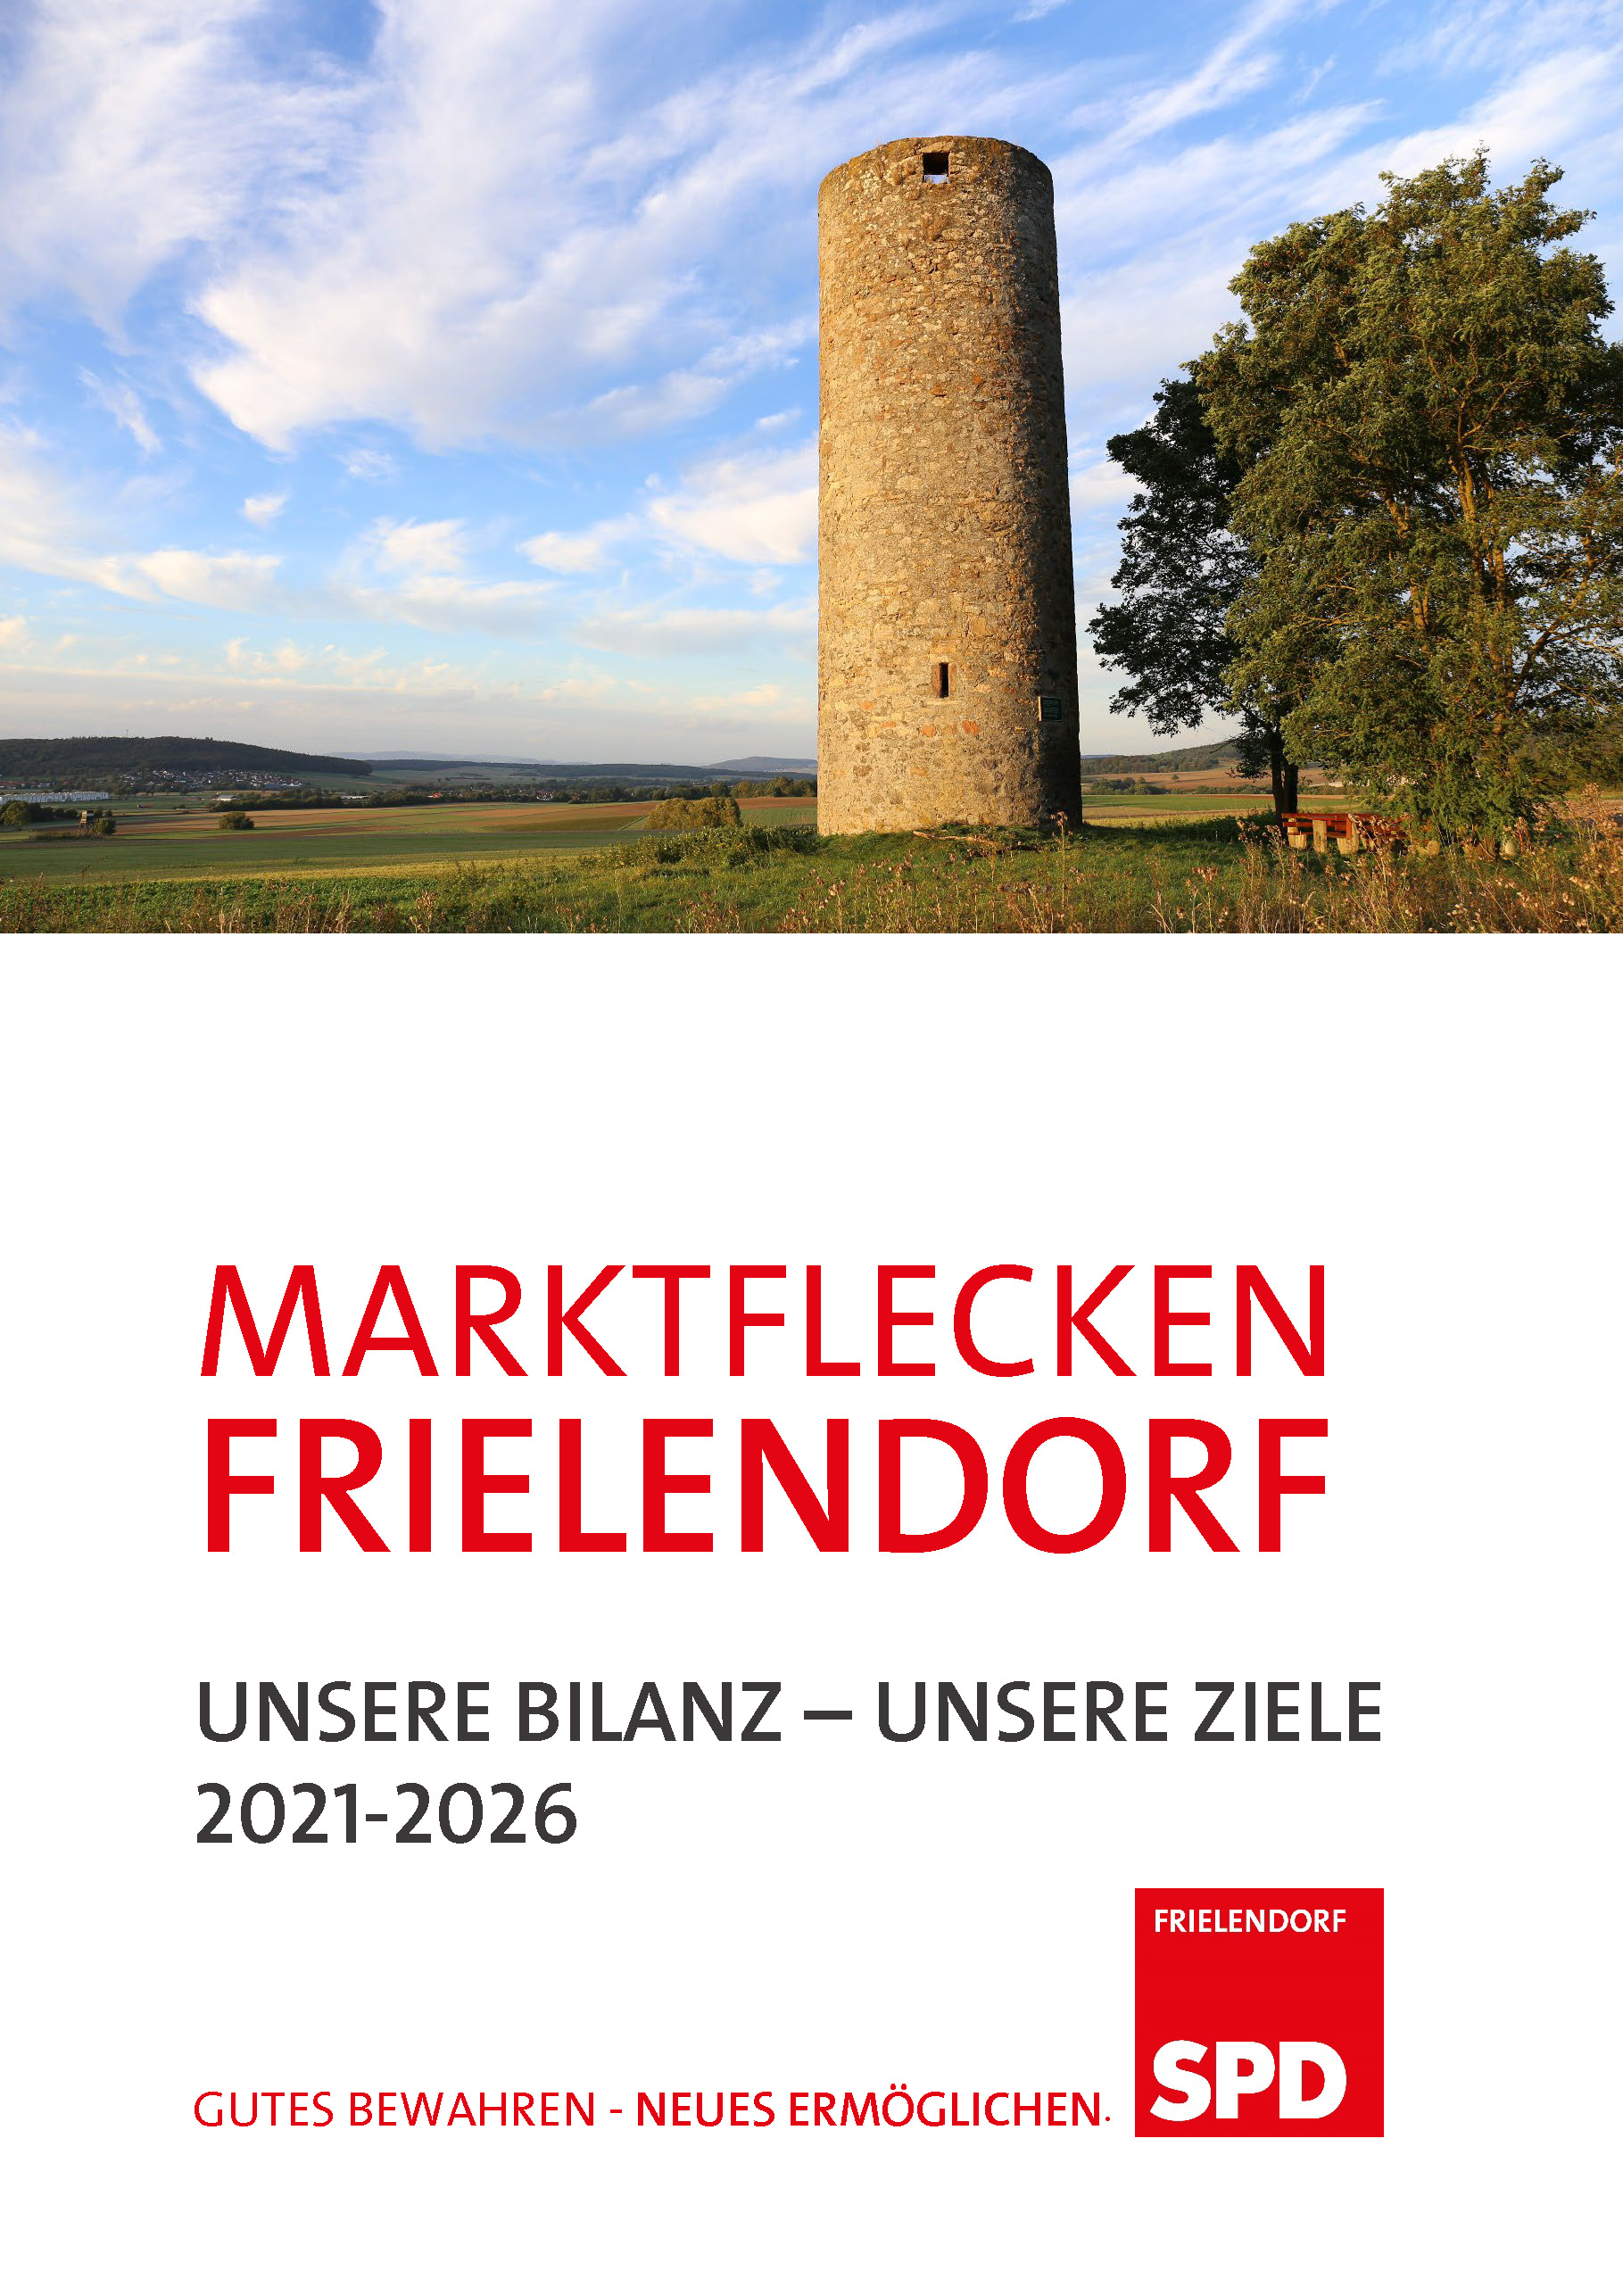 SPD Frielendorf Bilanz Ziele 2021 2026 final Seite 01